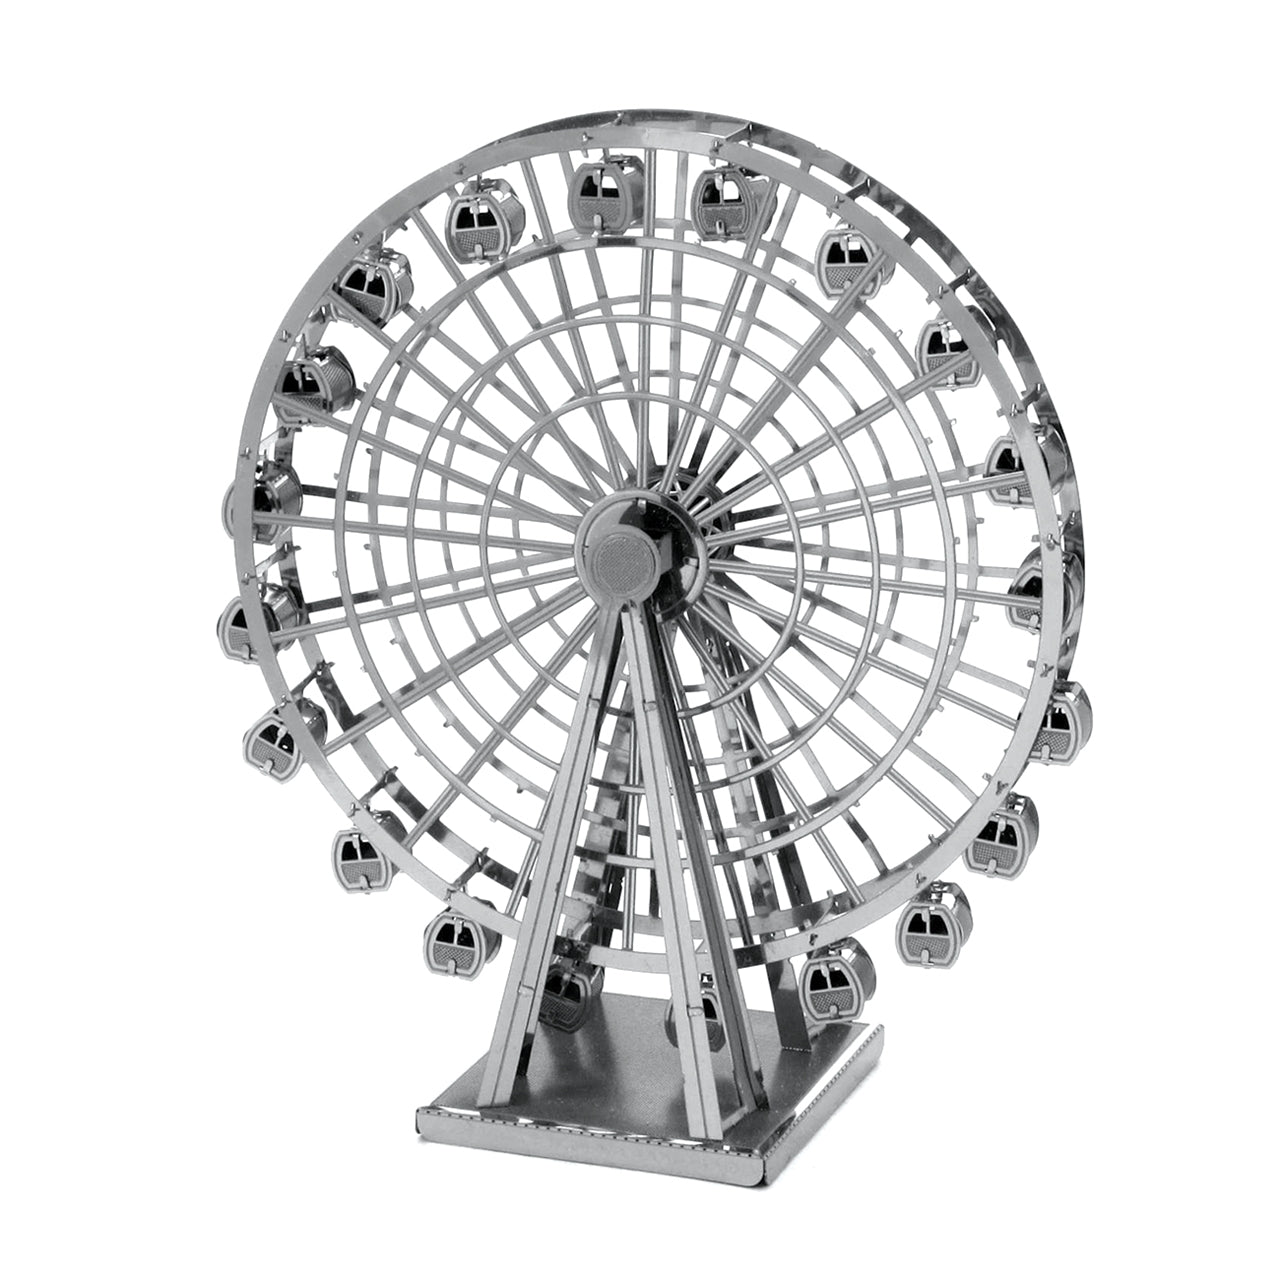 Model Earth - Ferris Wheel    